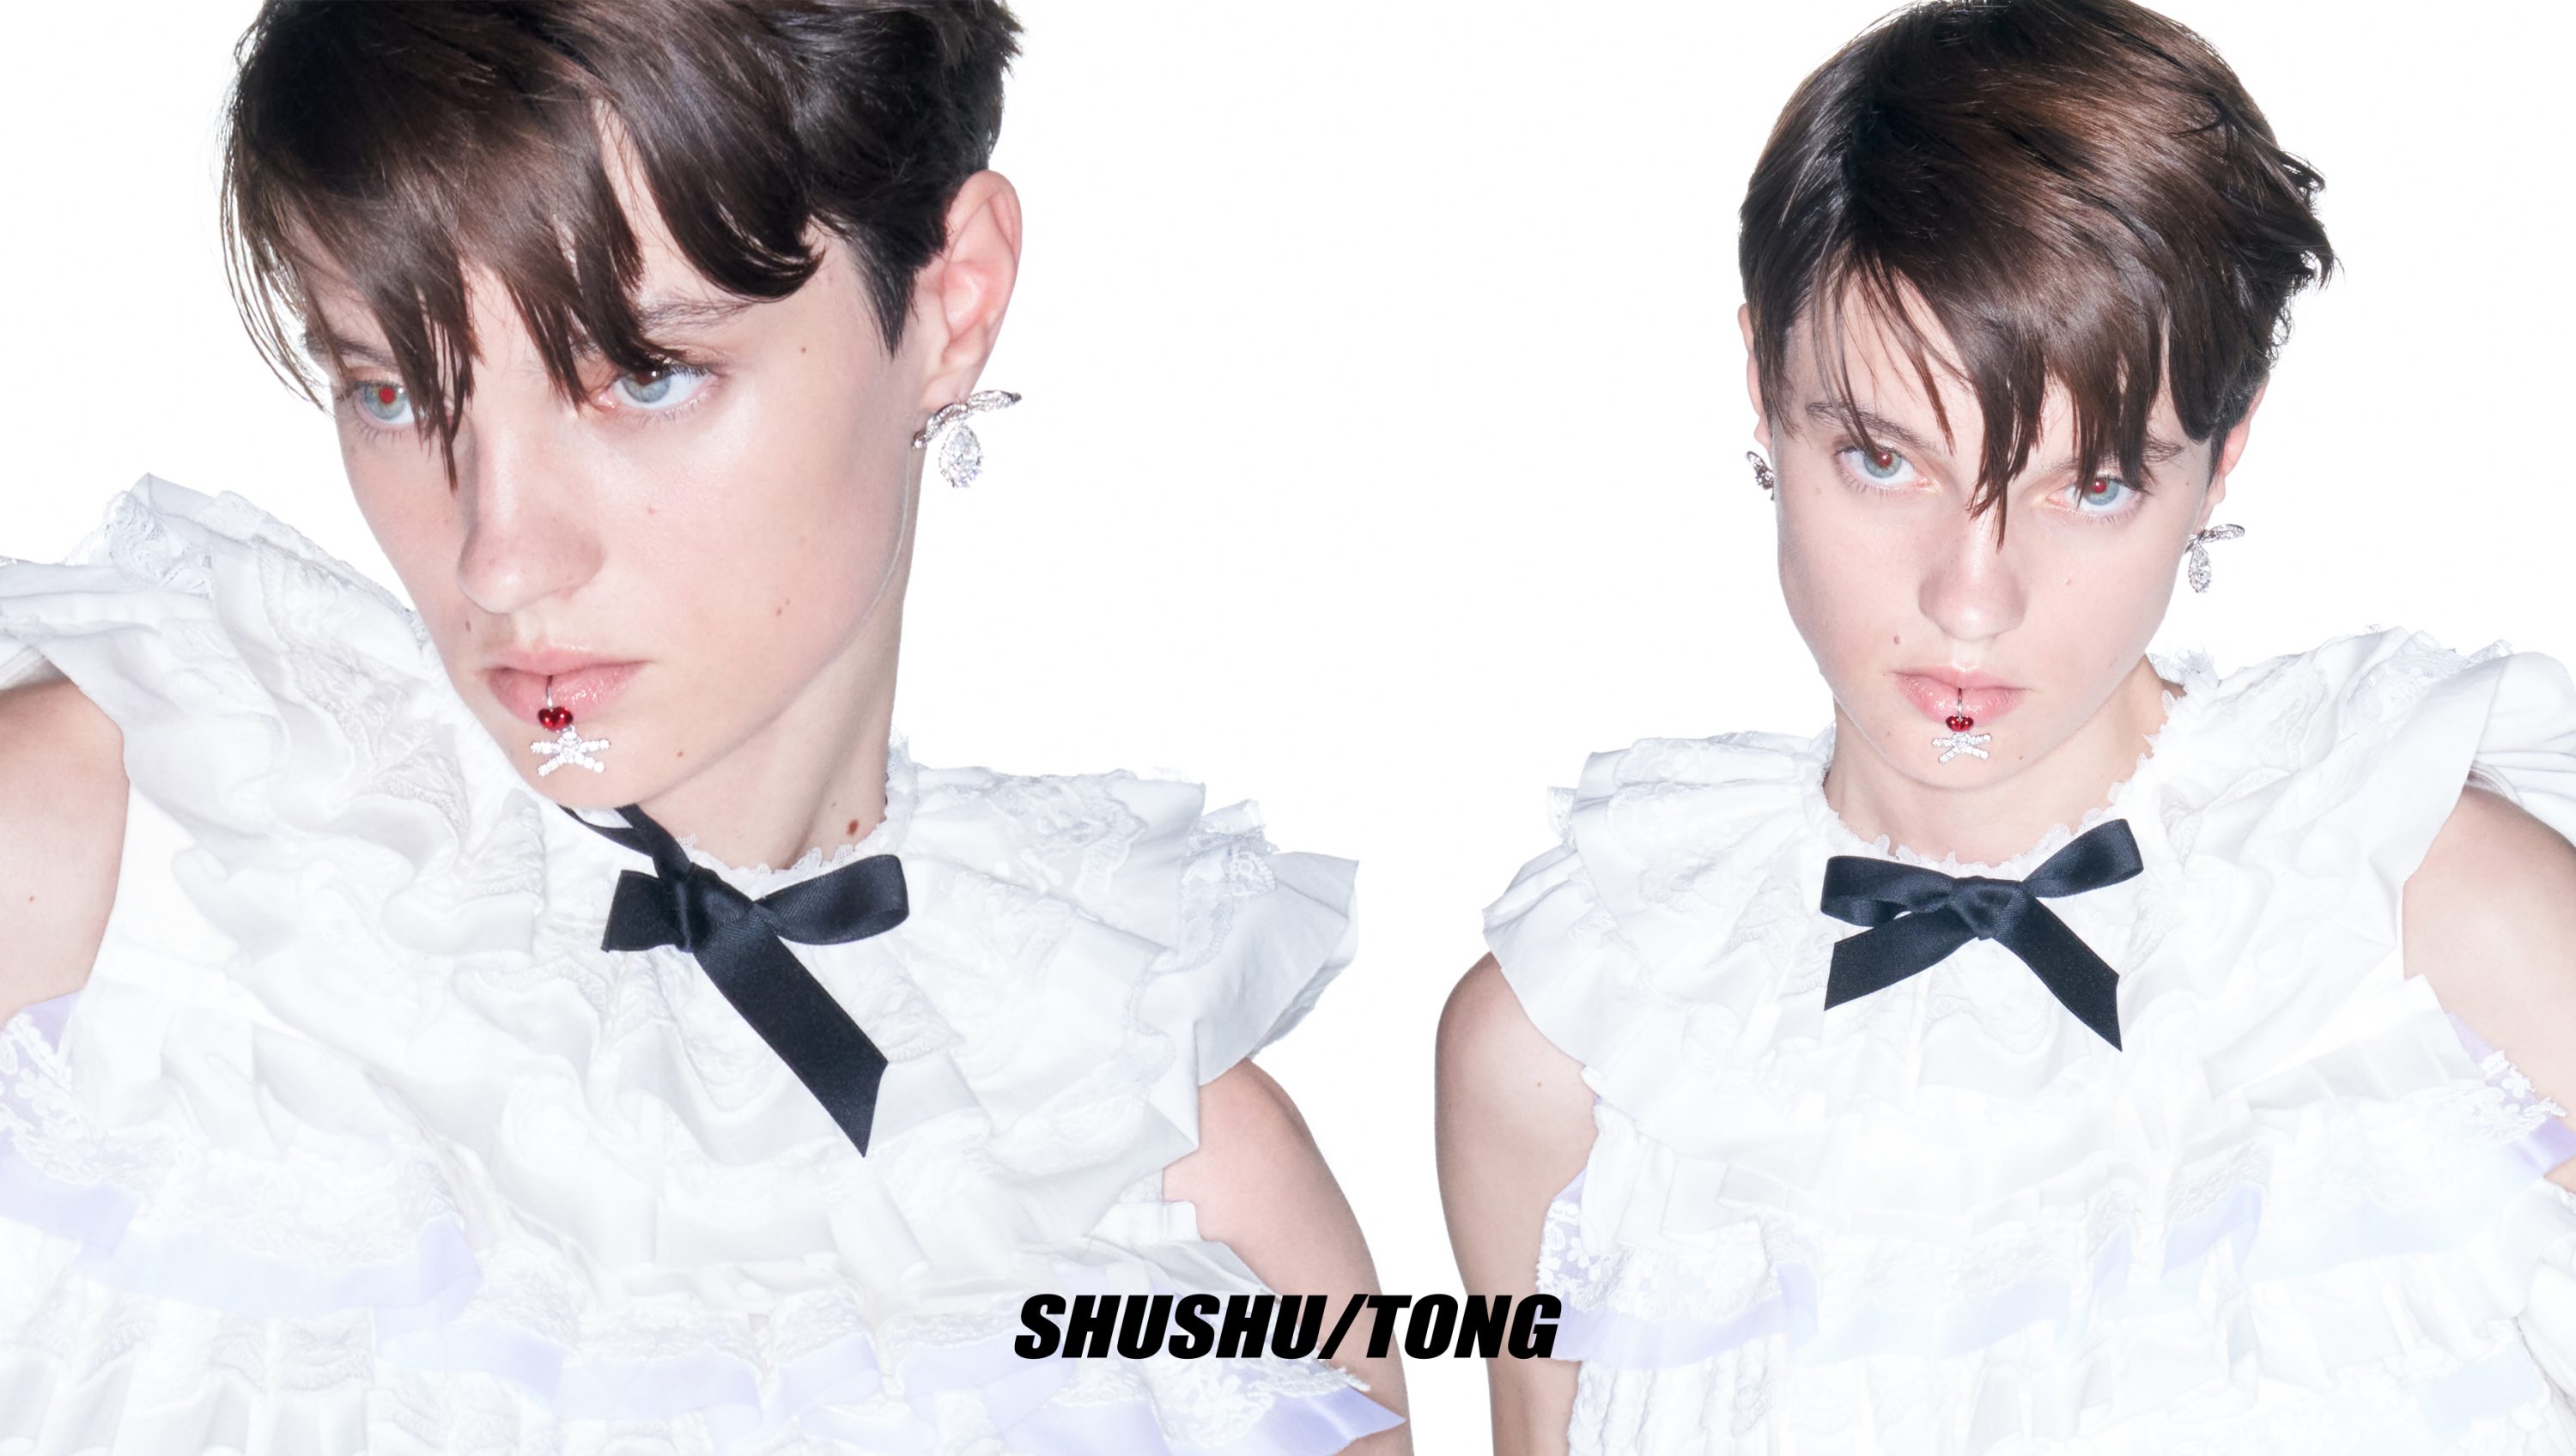 Shushu/Tong Fall 2023 Ad Campaign | The Impression